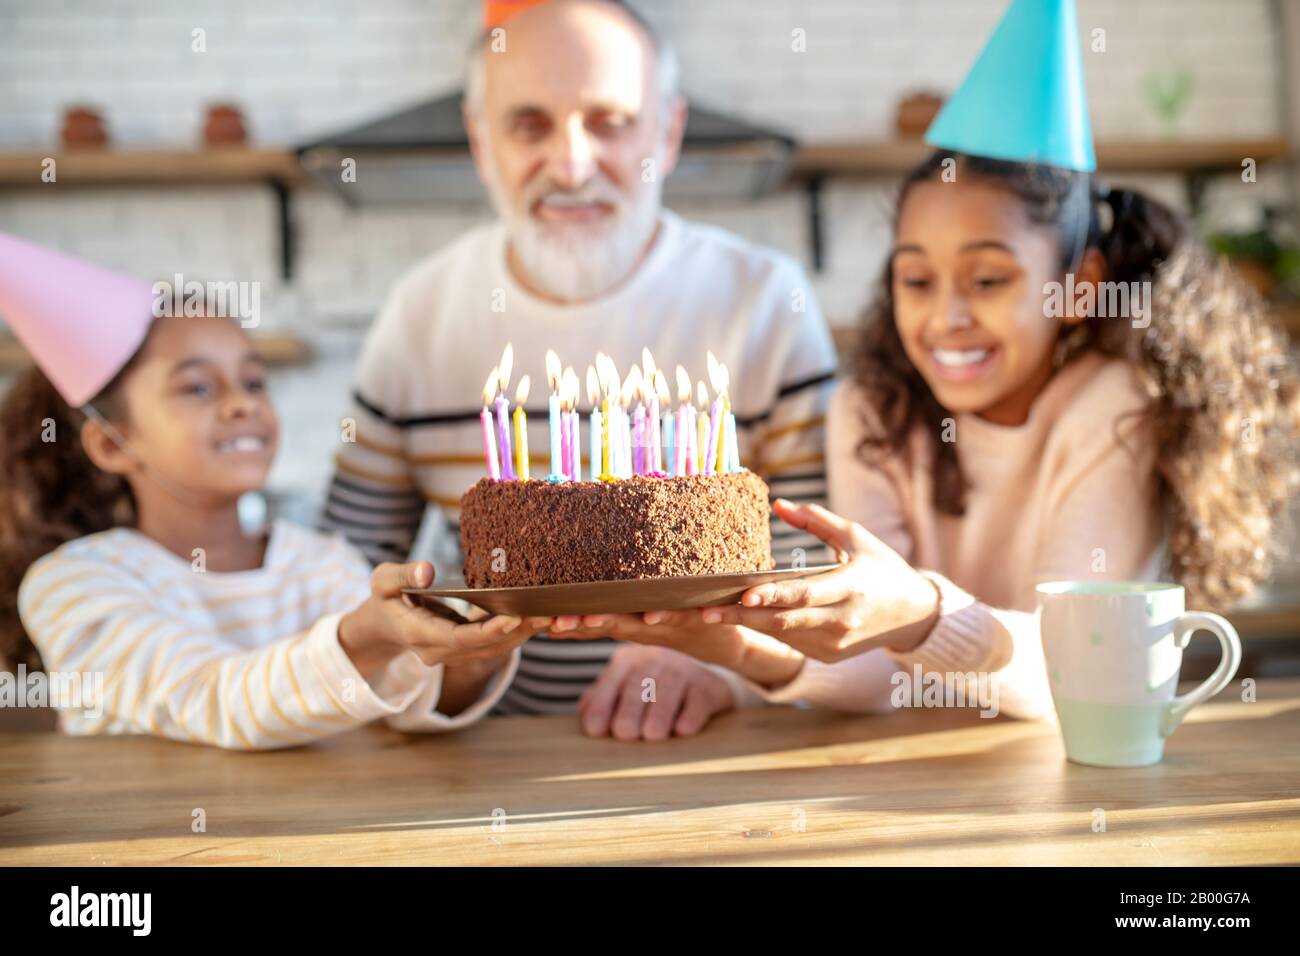 Two dark-skinned girls holding his grandads birthday cake Stock Photo